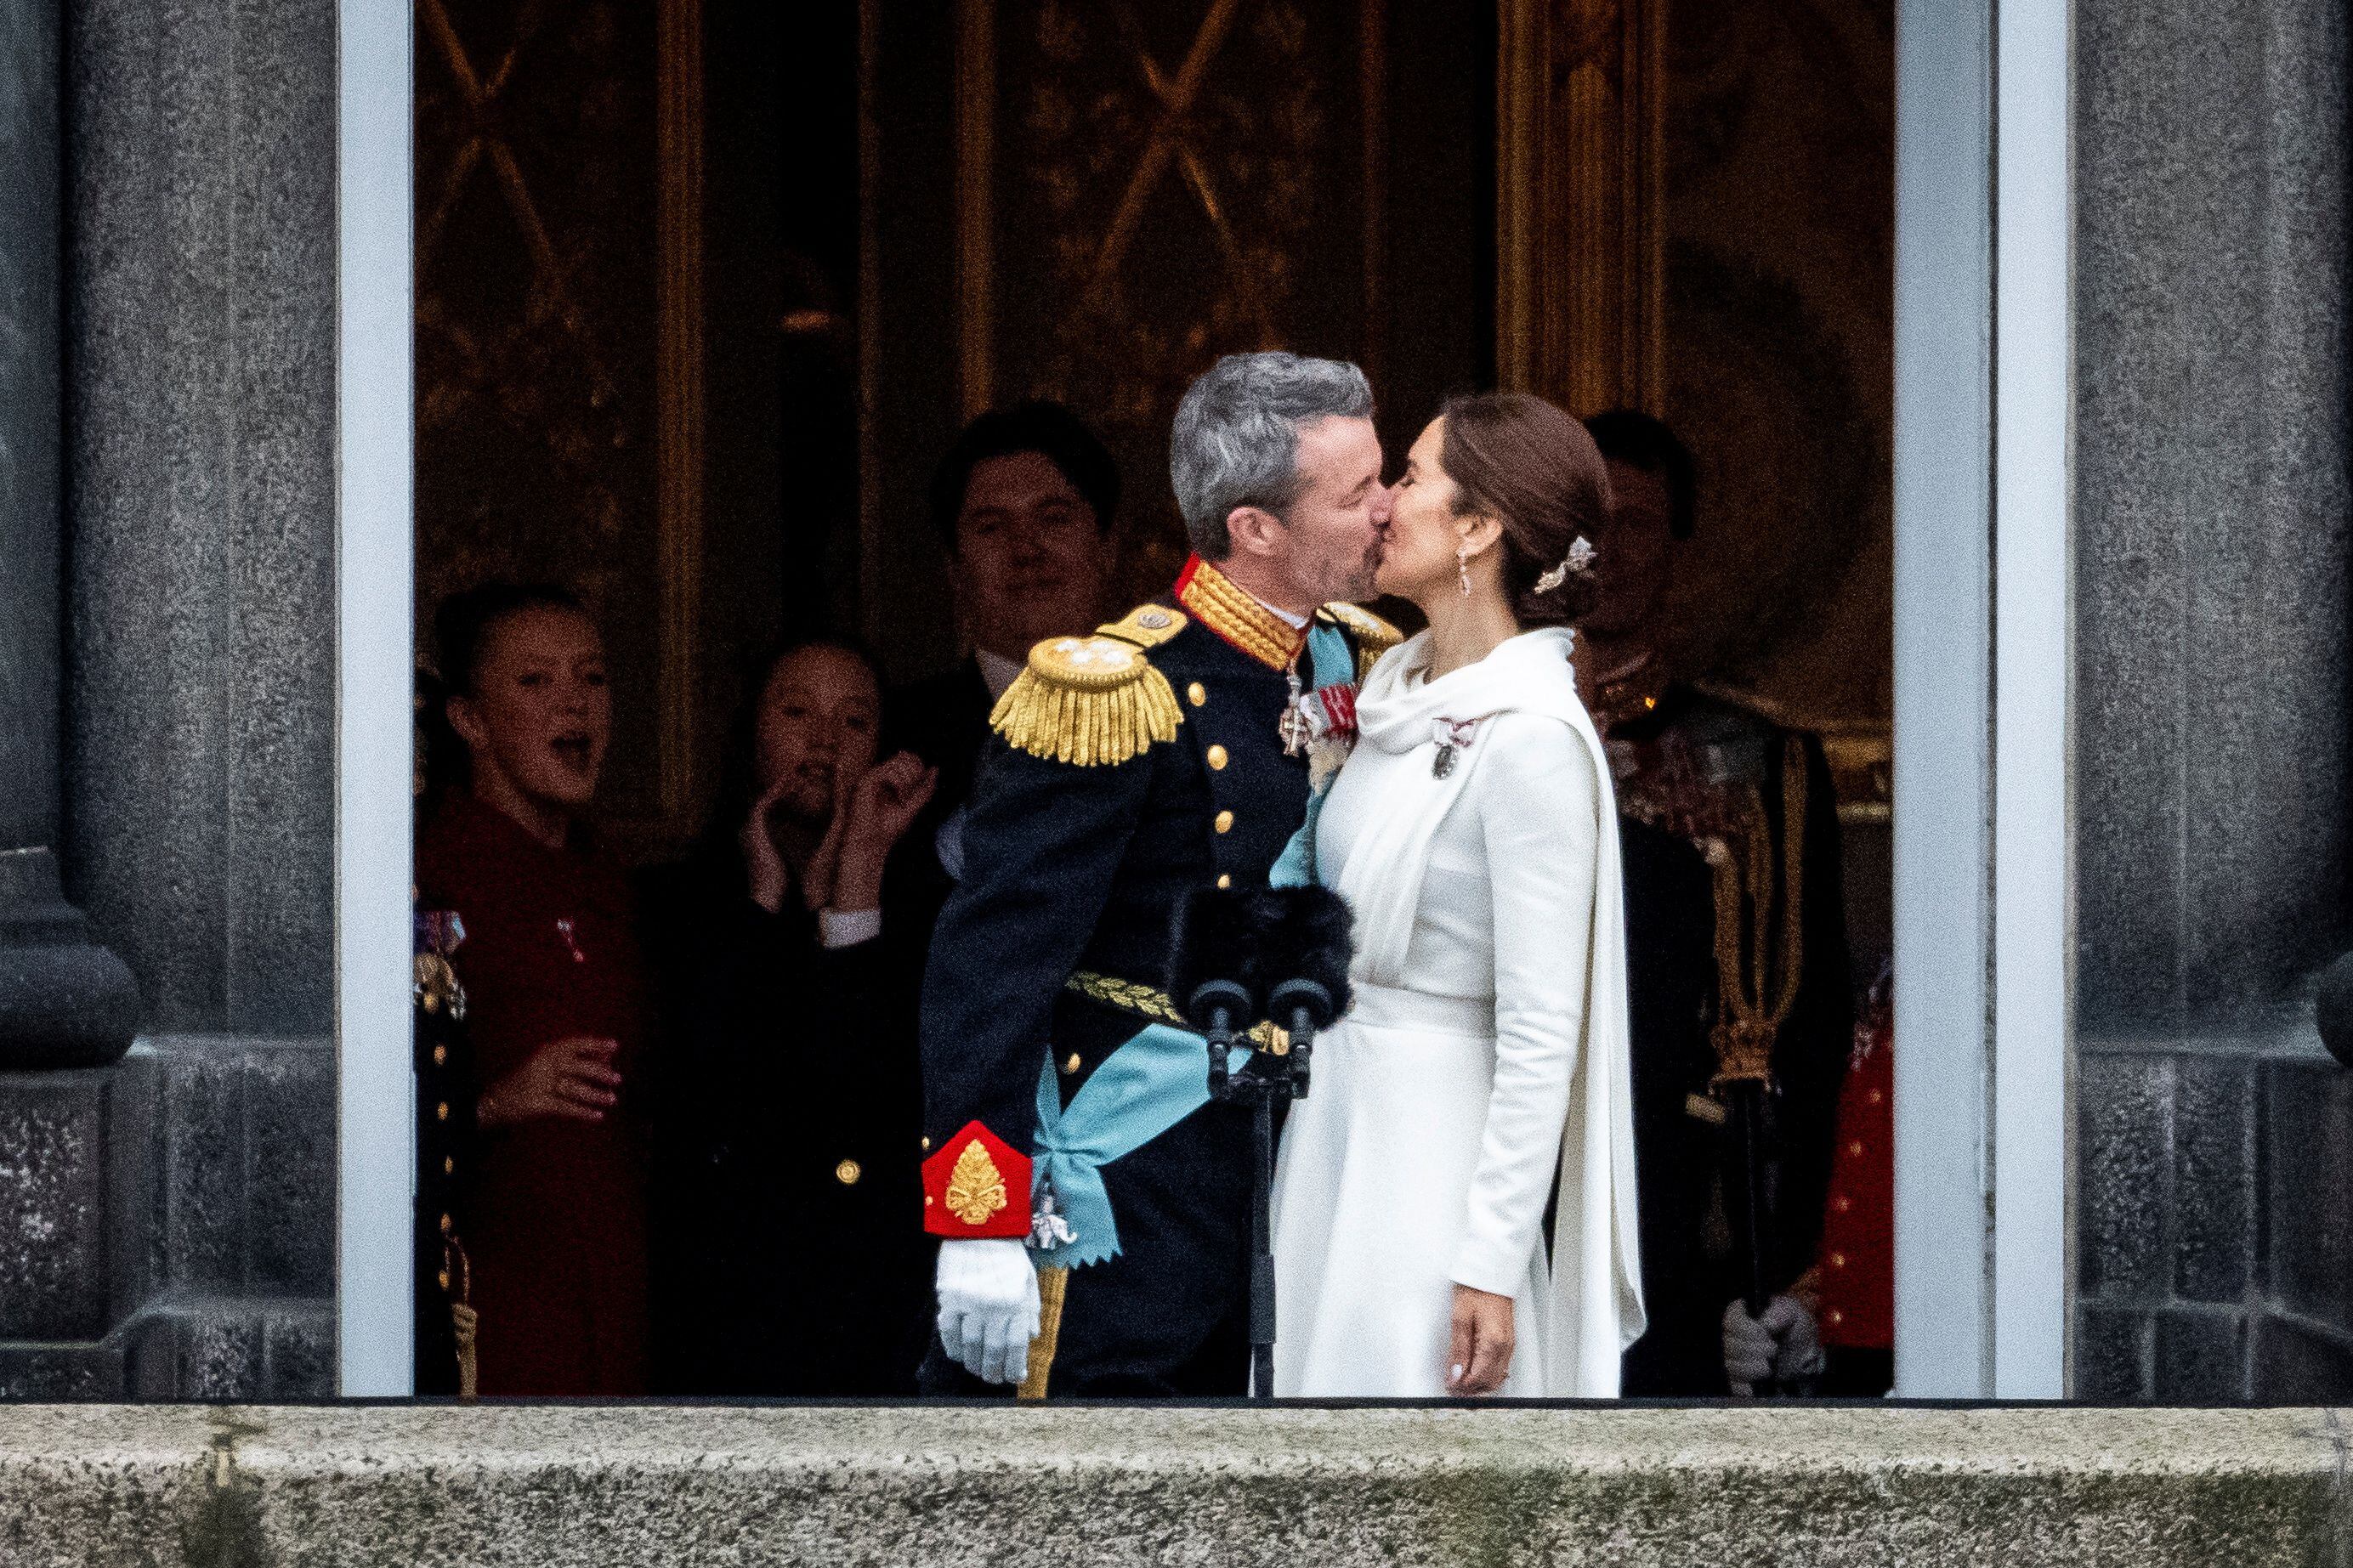 El recién proclamado rey Federico y la reina Mary de Dinamarca se besan en el balcón del Palacio de Christiansborg, en Copenhague, el 14 de enero de 2024.